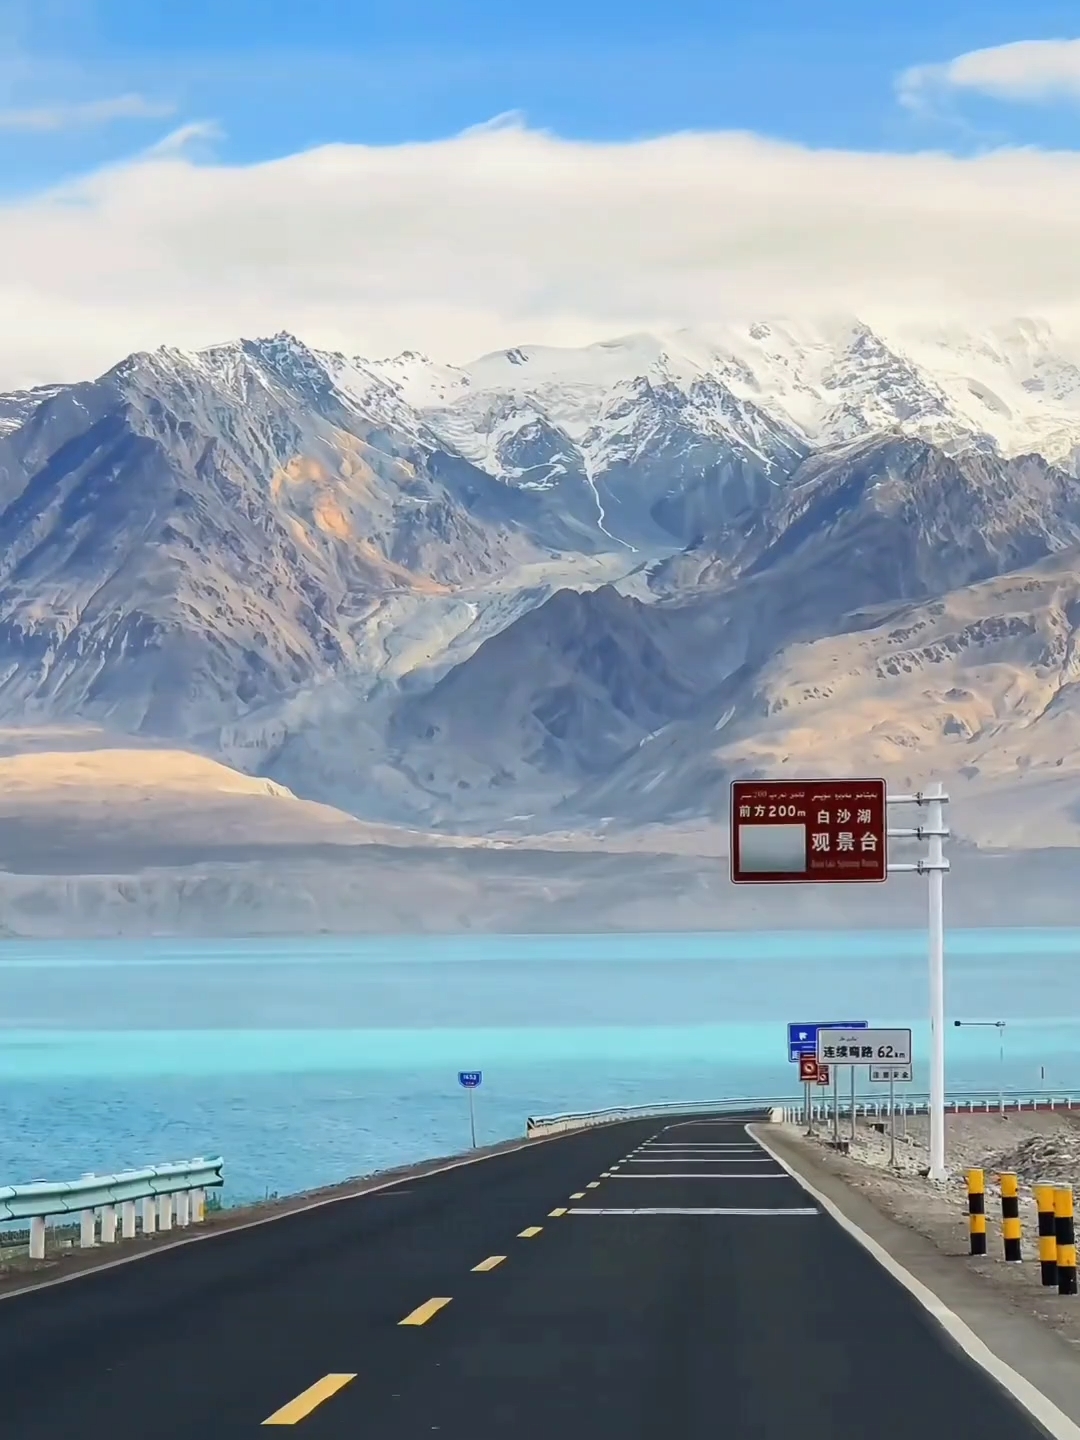 帕米尔来之前想象过它的美，来了以后形容不出它的美！ #我把新疆拍给你看 #总要去一趟新疆#公路上的风